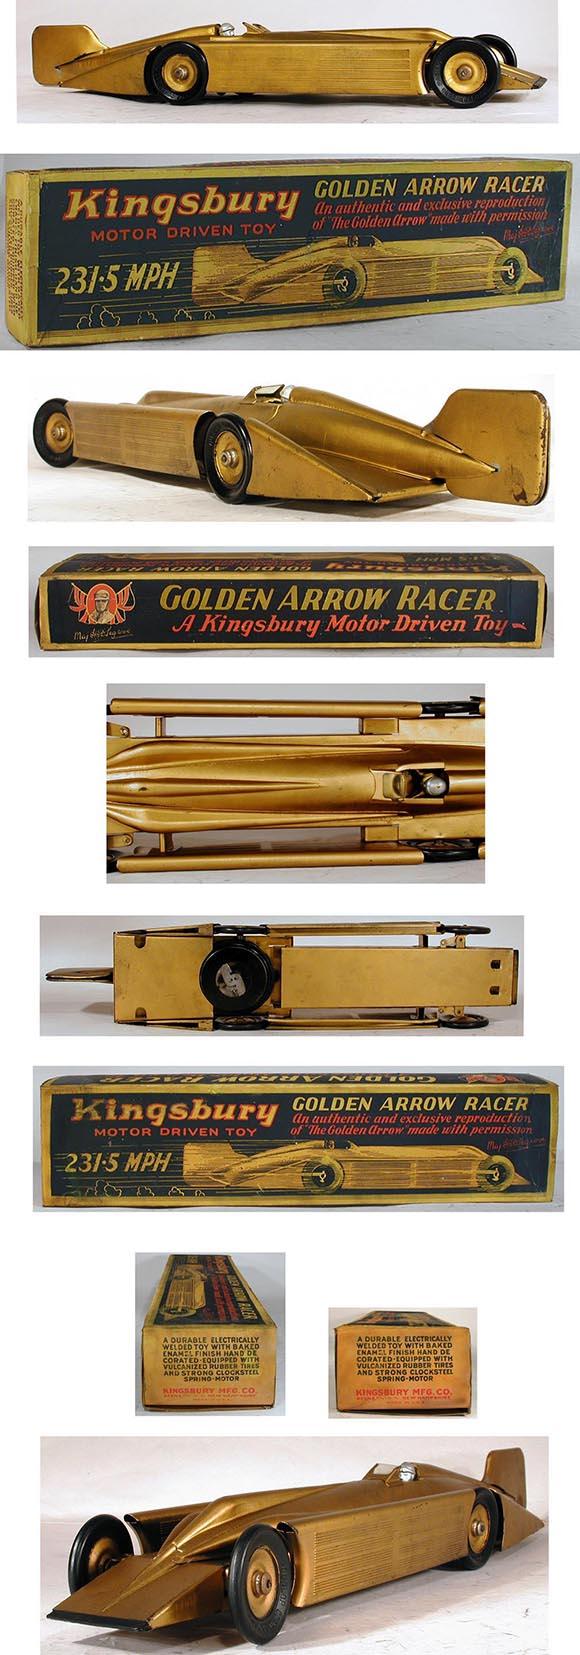 1927 Kingsbury, Clockwork Golden Arrow Racer in Original Box